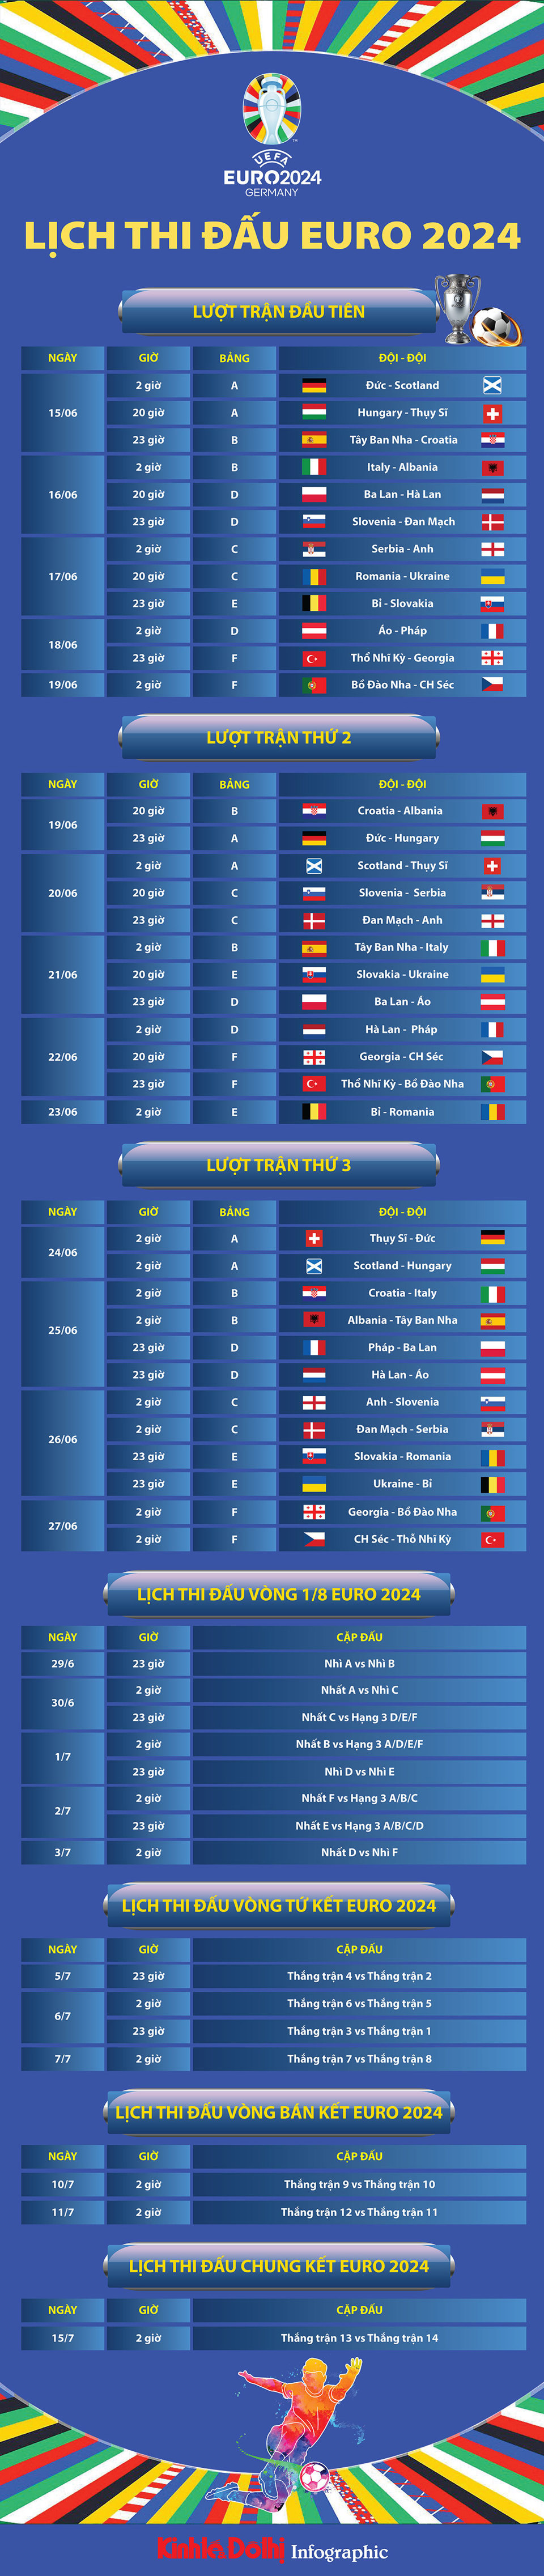 Lịch thi đấu EURO 2024 ngày 16/6: Hà Lan và Anh ra quân - Ảnh 1